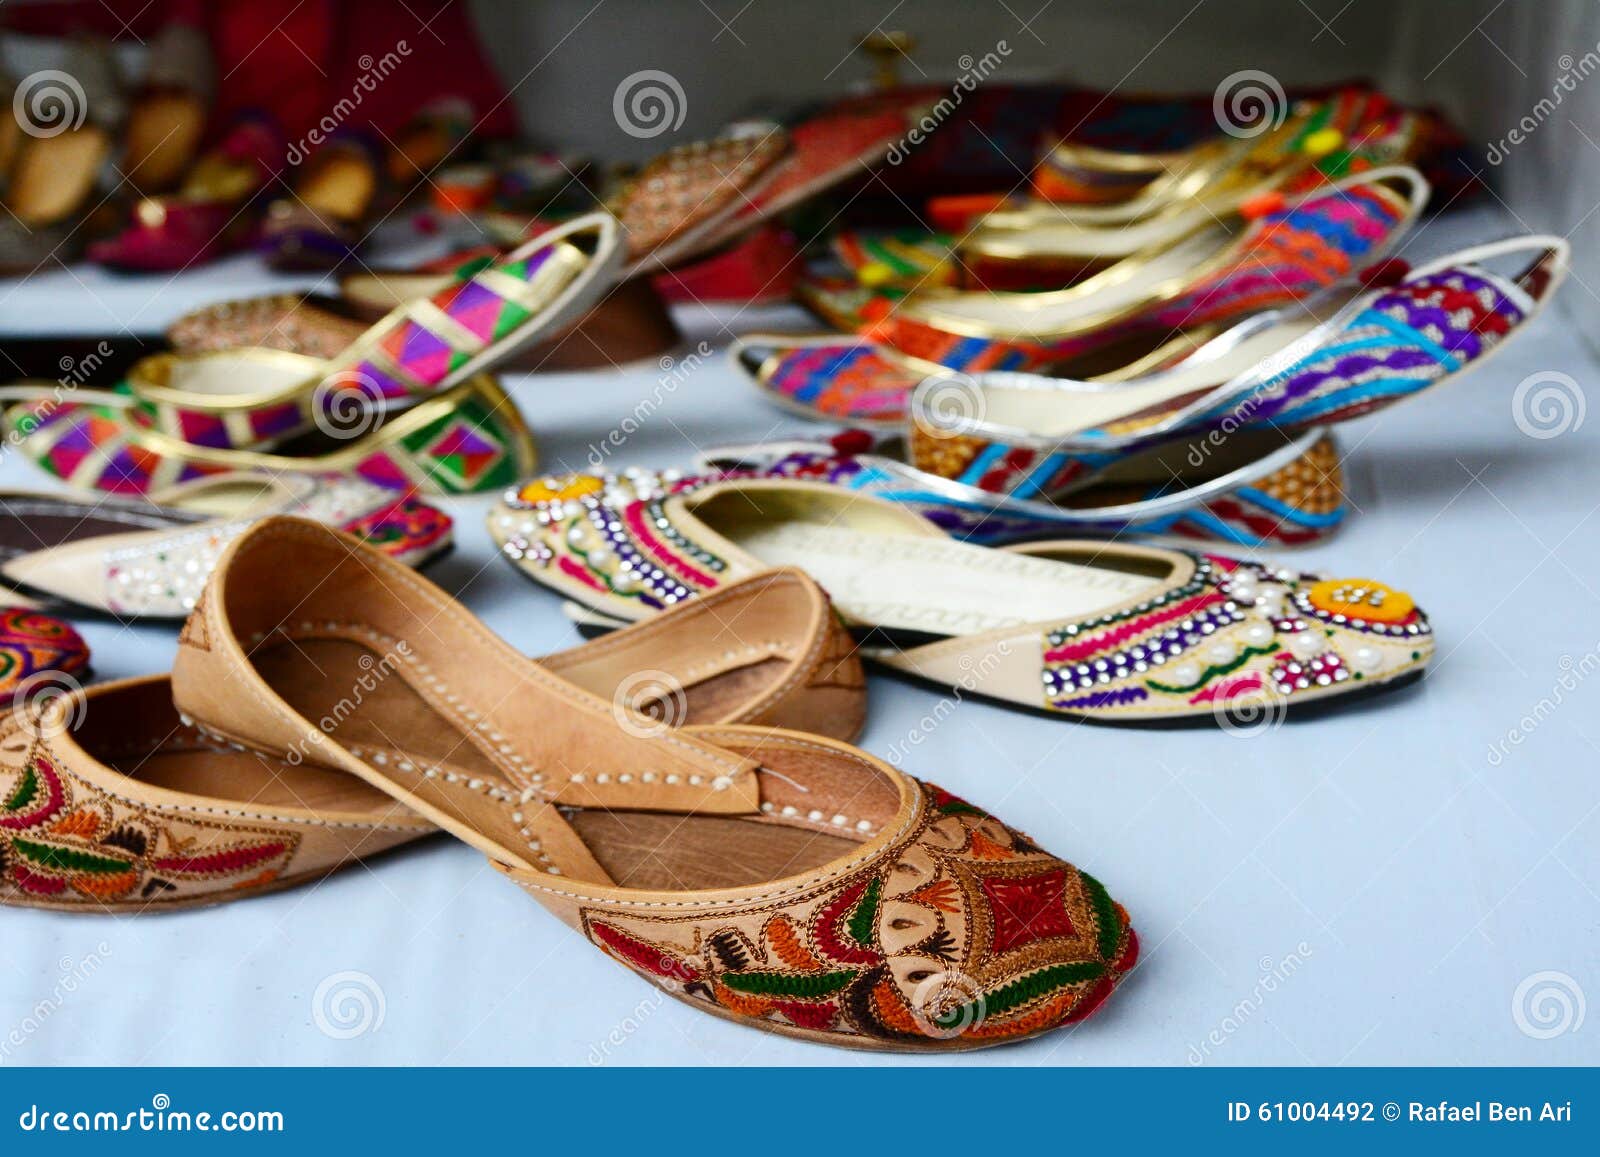 Ζωηρόχρωμα ινδικά εθνικά παπούτσια Στοκ Εικόνες - εικόνα από accidence:  61004492